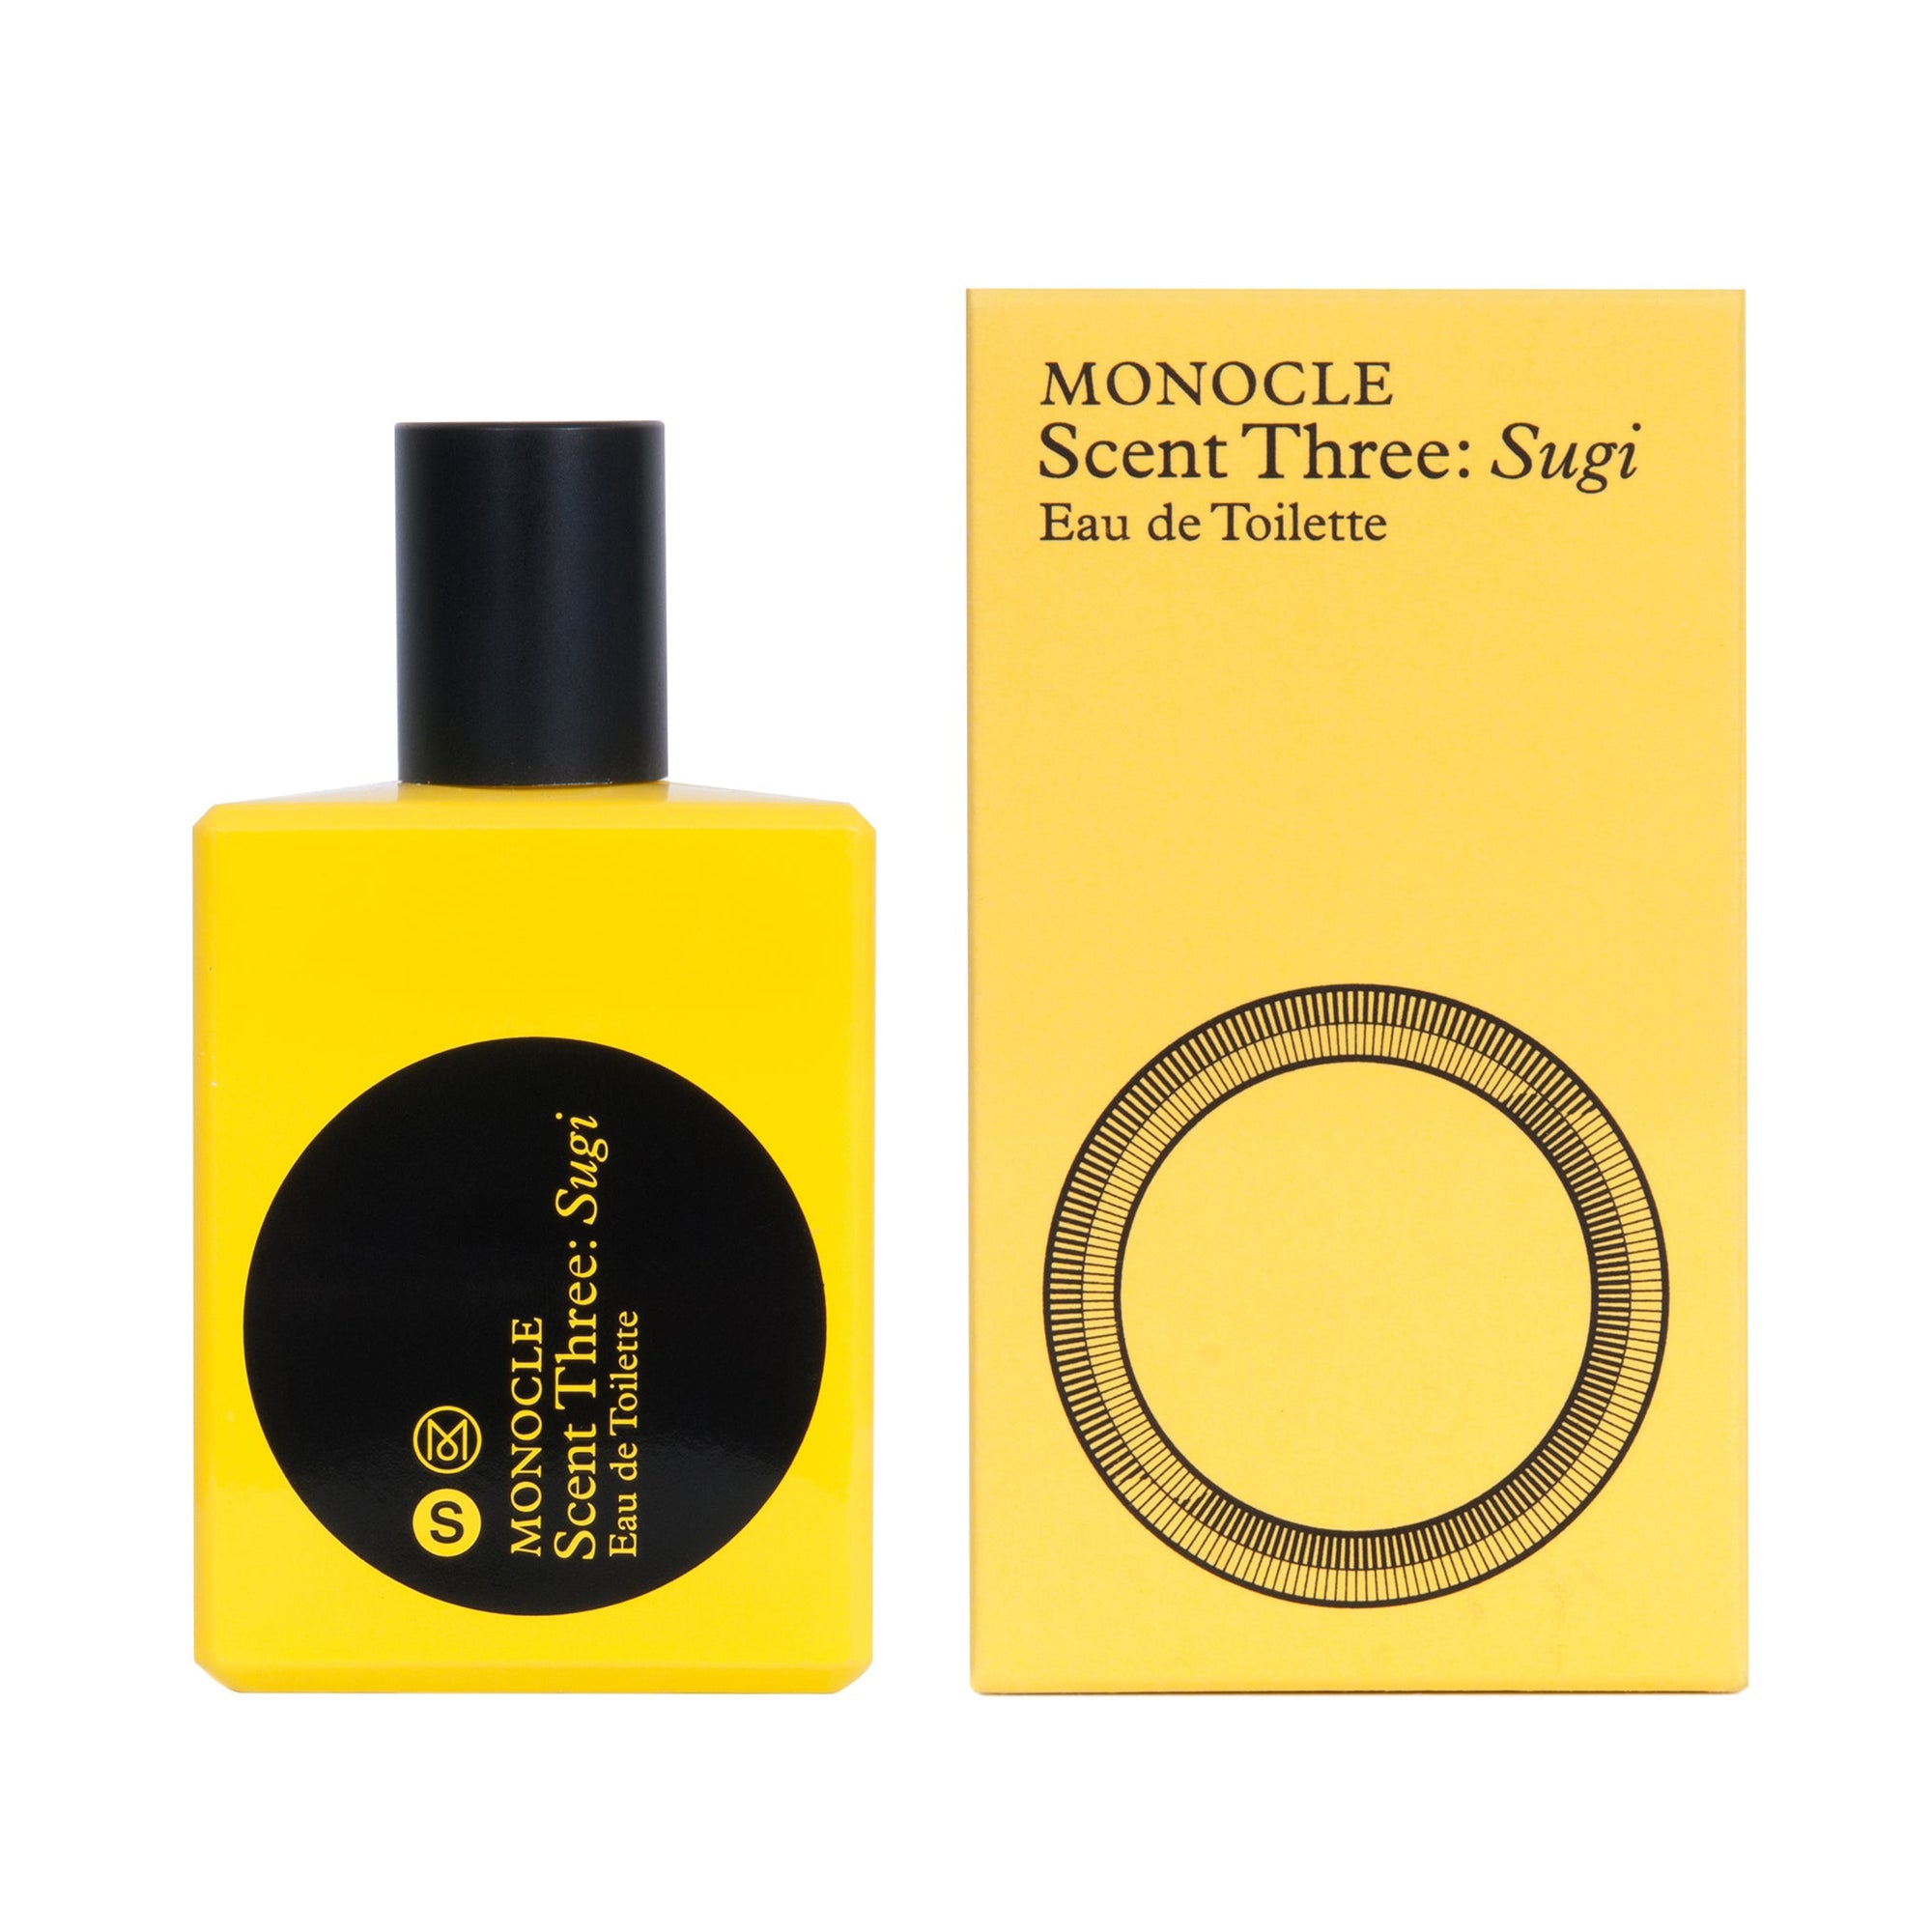 CDG Parfum - Monocle Scent Three Sugi Eau de Toilette - (50ml natural spray) view 2